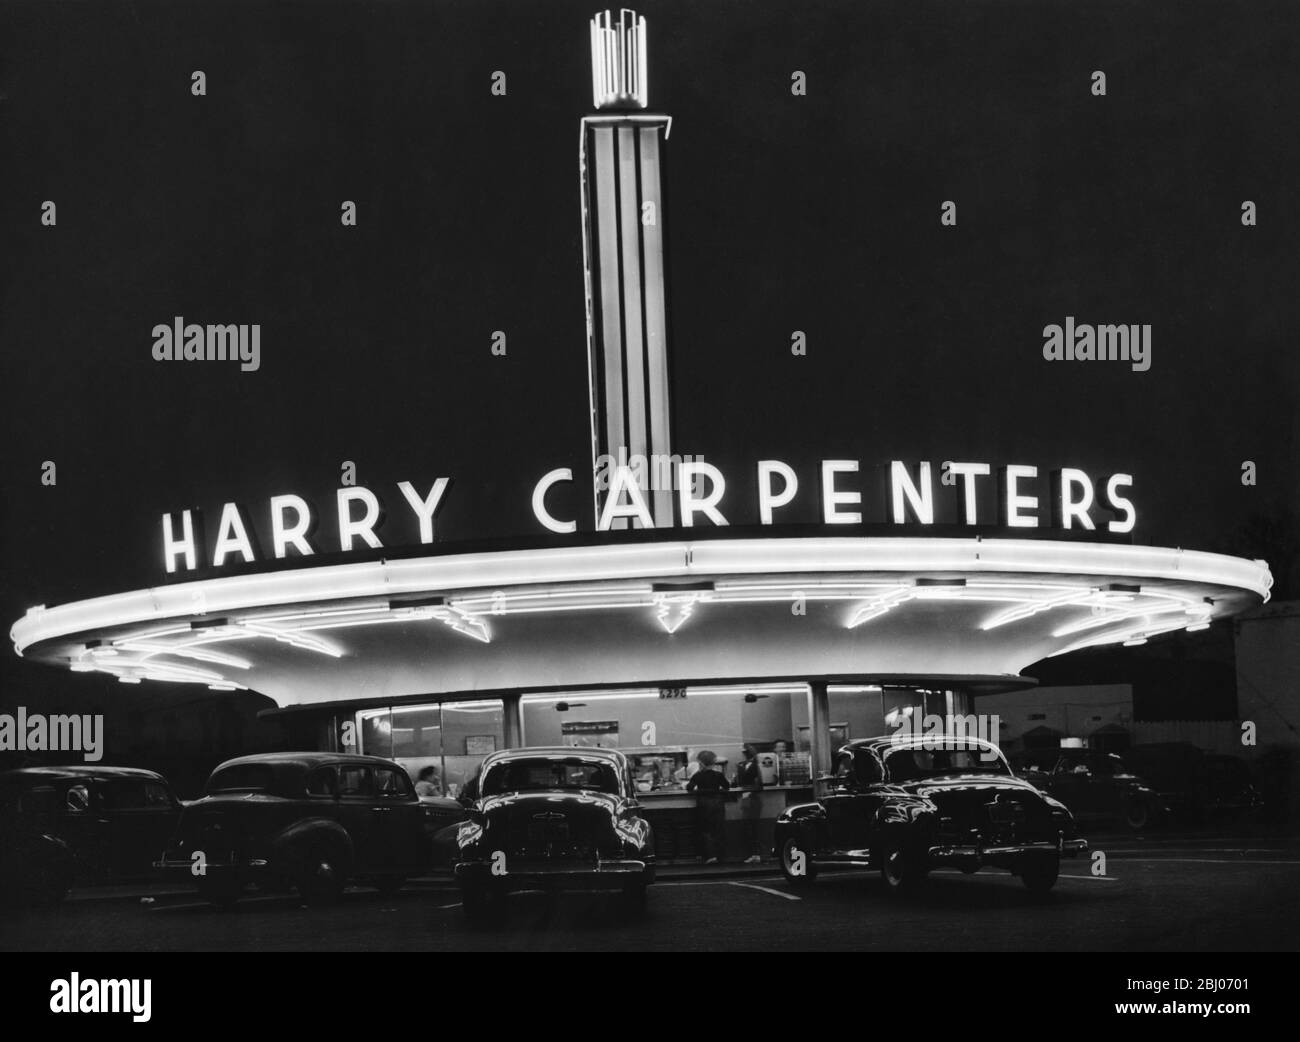 Au coin de Sunshine Boulevard et Vine Street d'Hollywood, se trouve Harry Carpenters Drive-in , qui offre le même service de nuit sous les néons et les lumières fluorescentes Banque D'Images